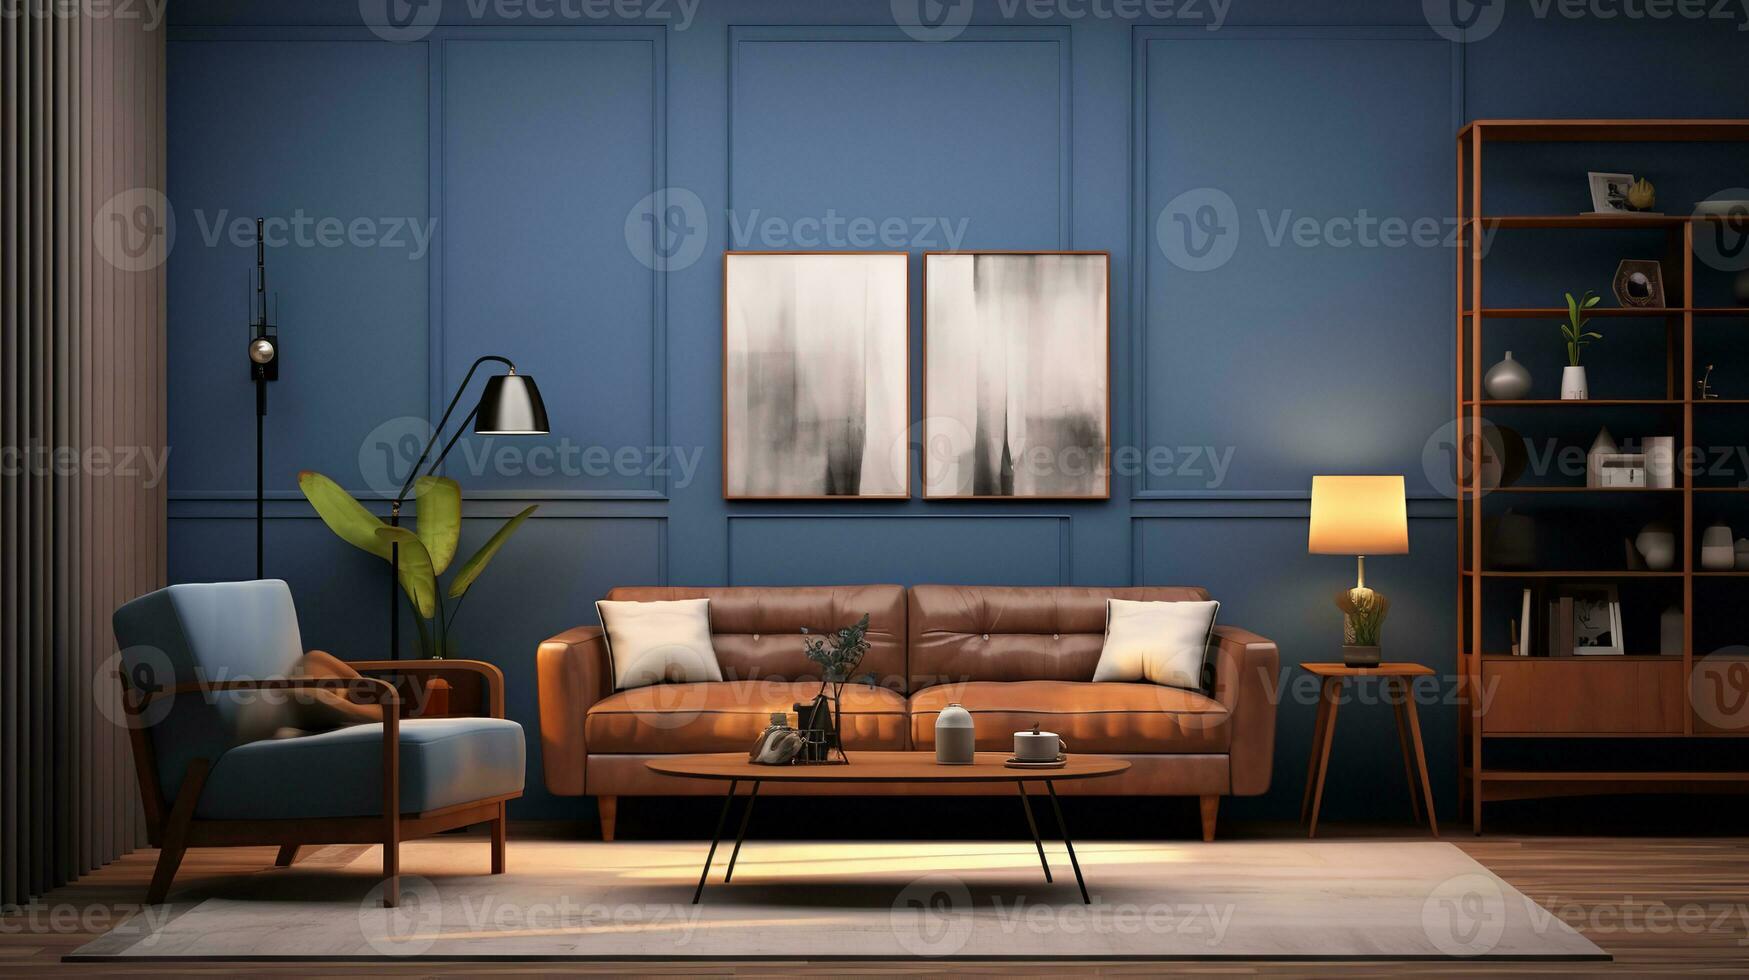 ai alstrande Foto av skandinaviskt inspirerad levande rum med vit sektions soffa, ljus trä kaffe tabell, sträng lampor, och stor fönster. de vit sektions soffa är de fokal- punkt av de rum